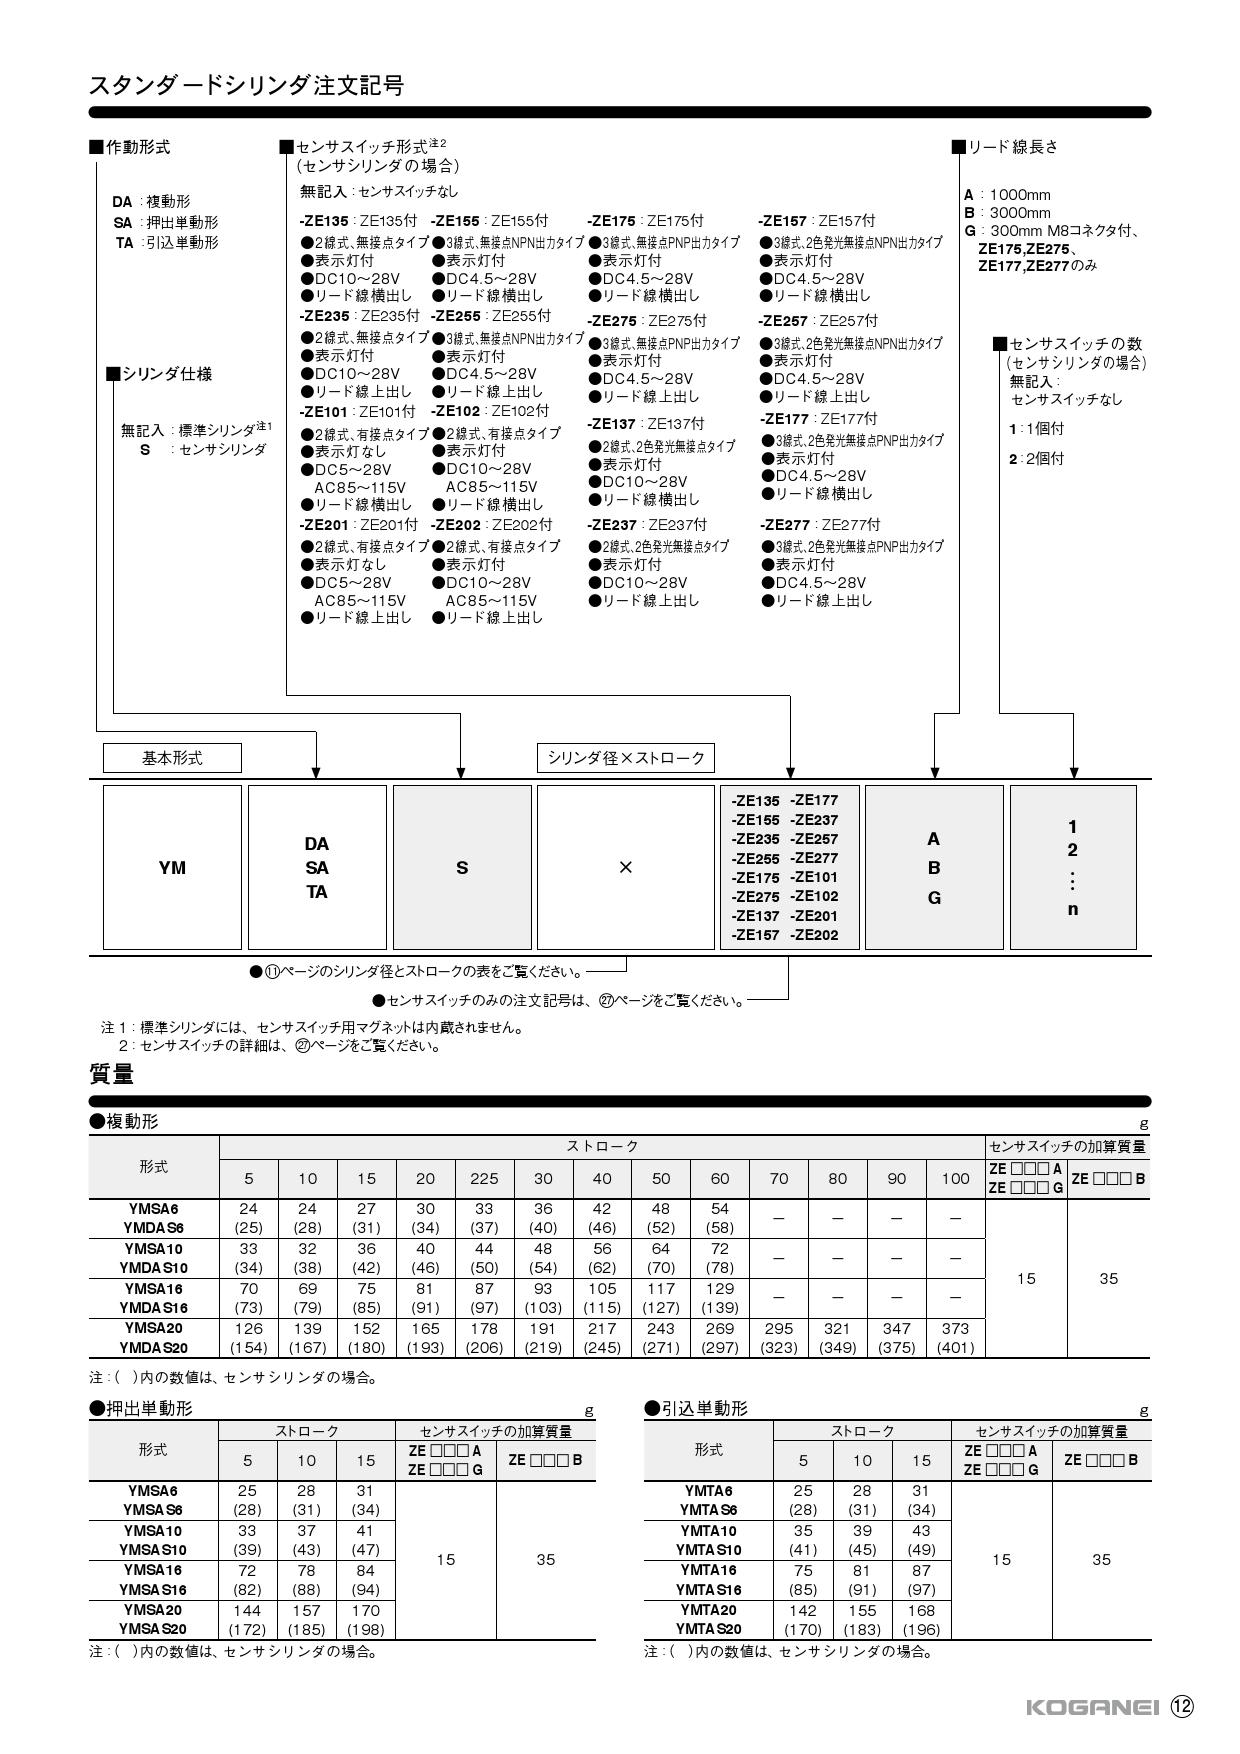 コガネイ ハイマルチシリンダシリーズ YMDAGS16X60-ZE202A1 ガーデンファニチャー